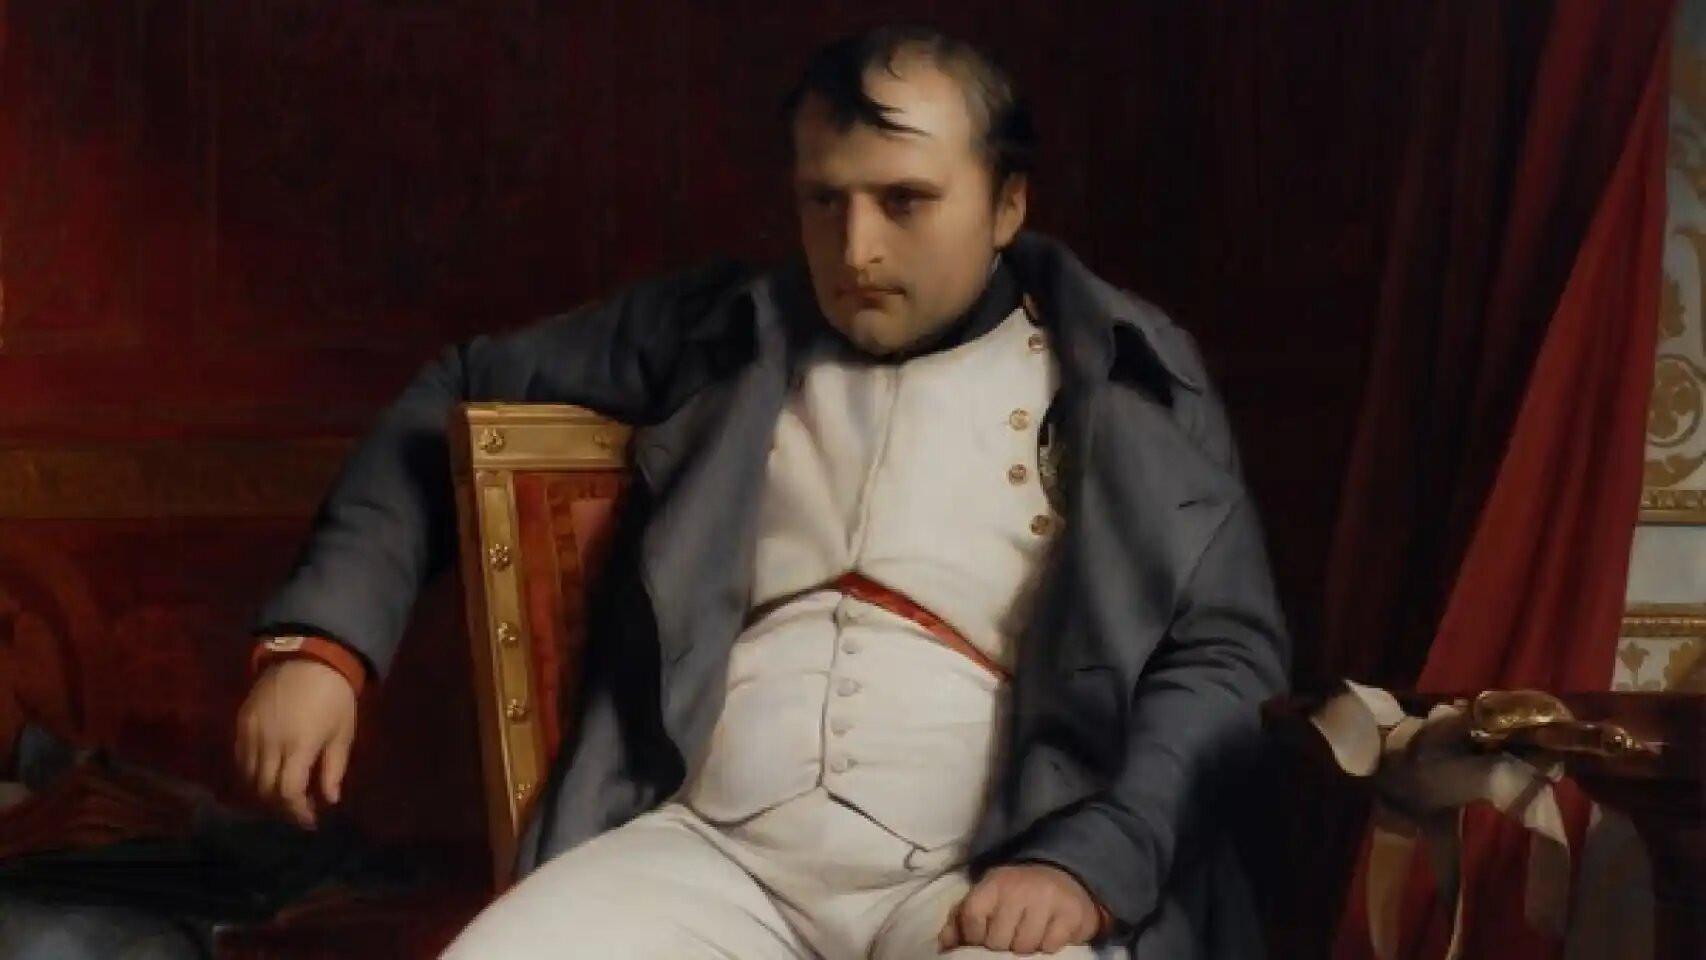 Napoléon Bonaparte.